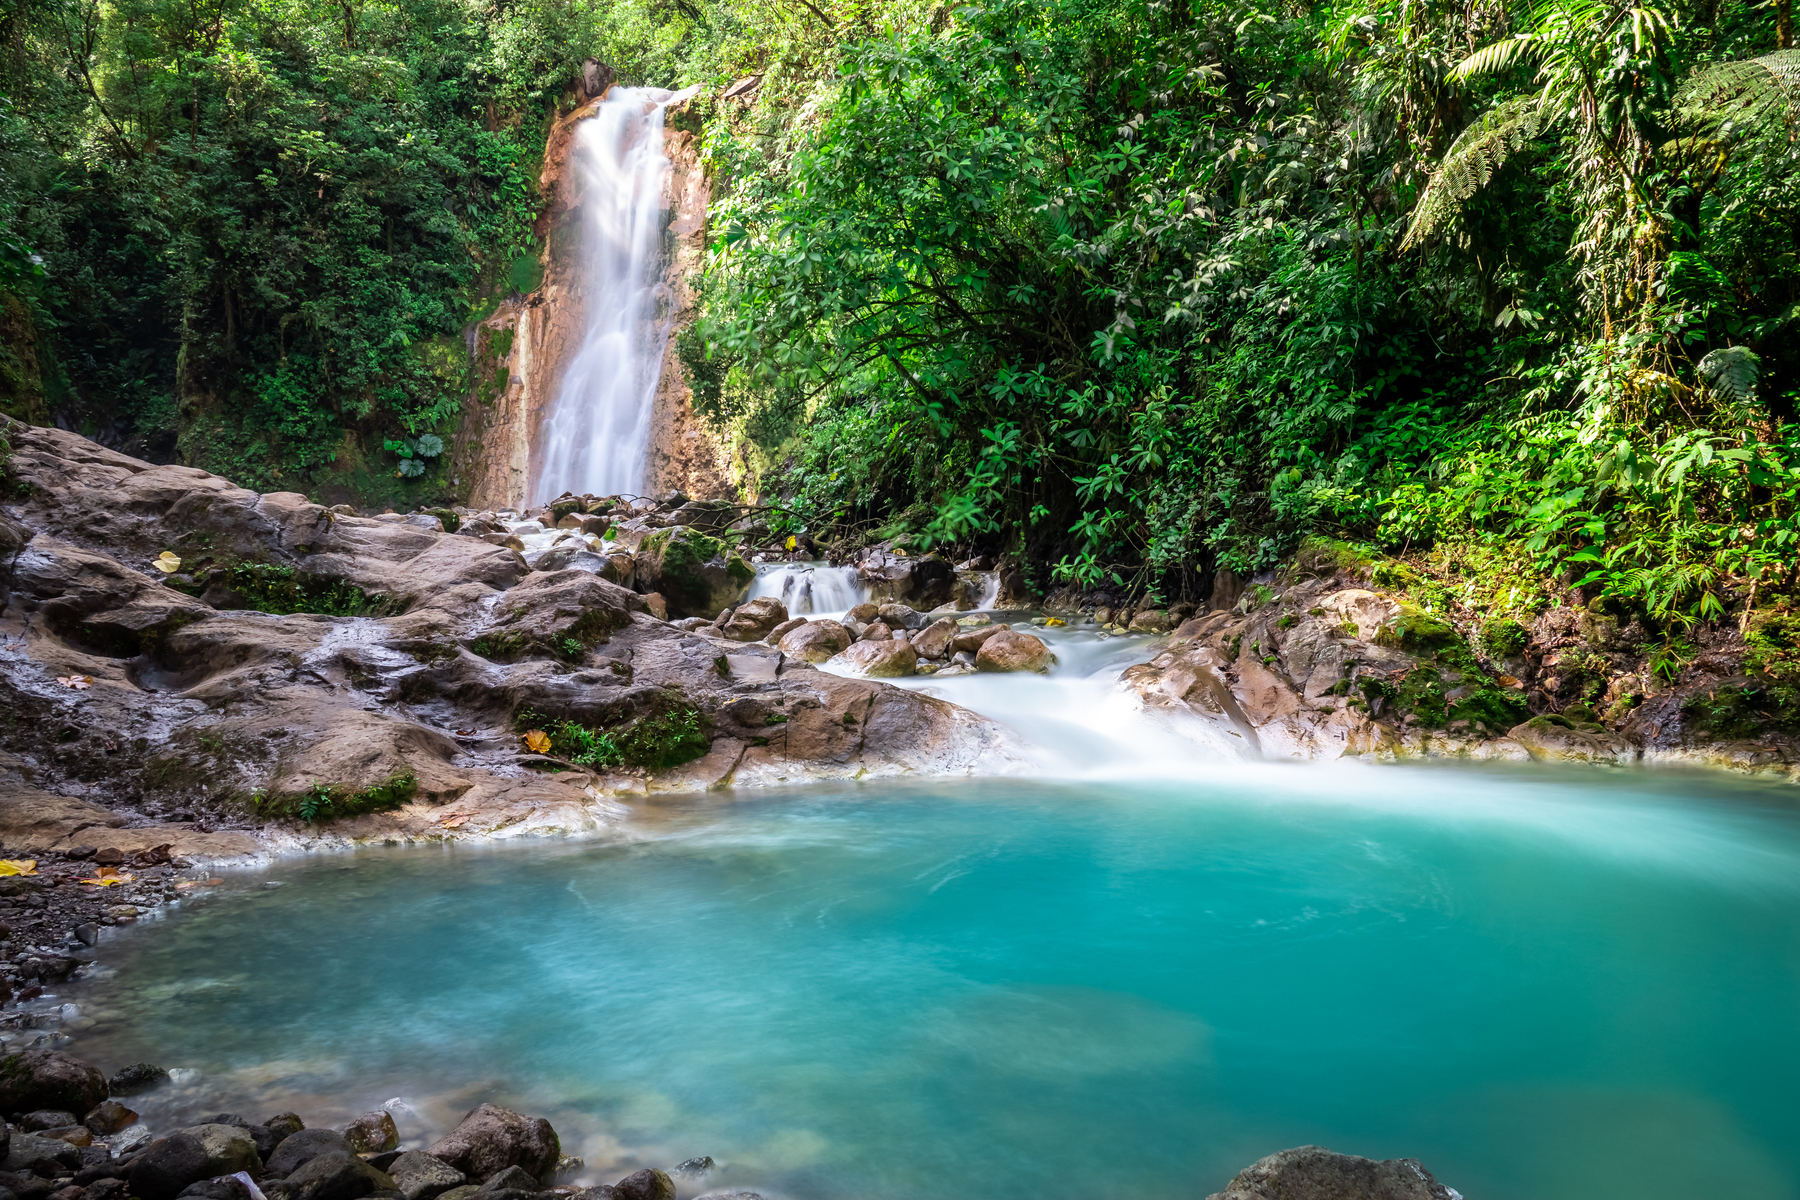 Blue,Falls,Of,Costa,Rica,,Natural,Landscape,At,Bajos,Del